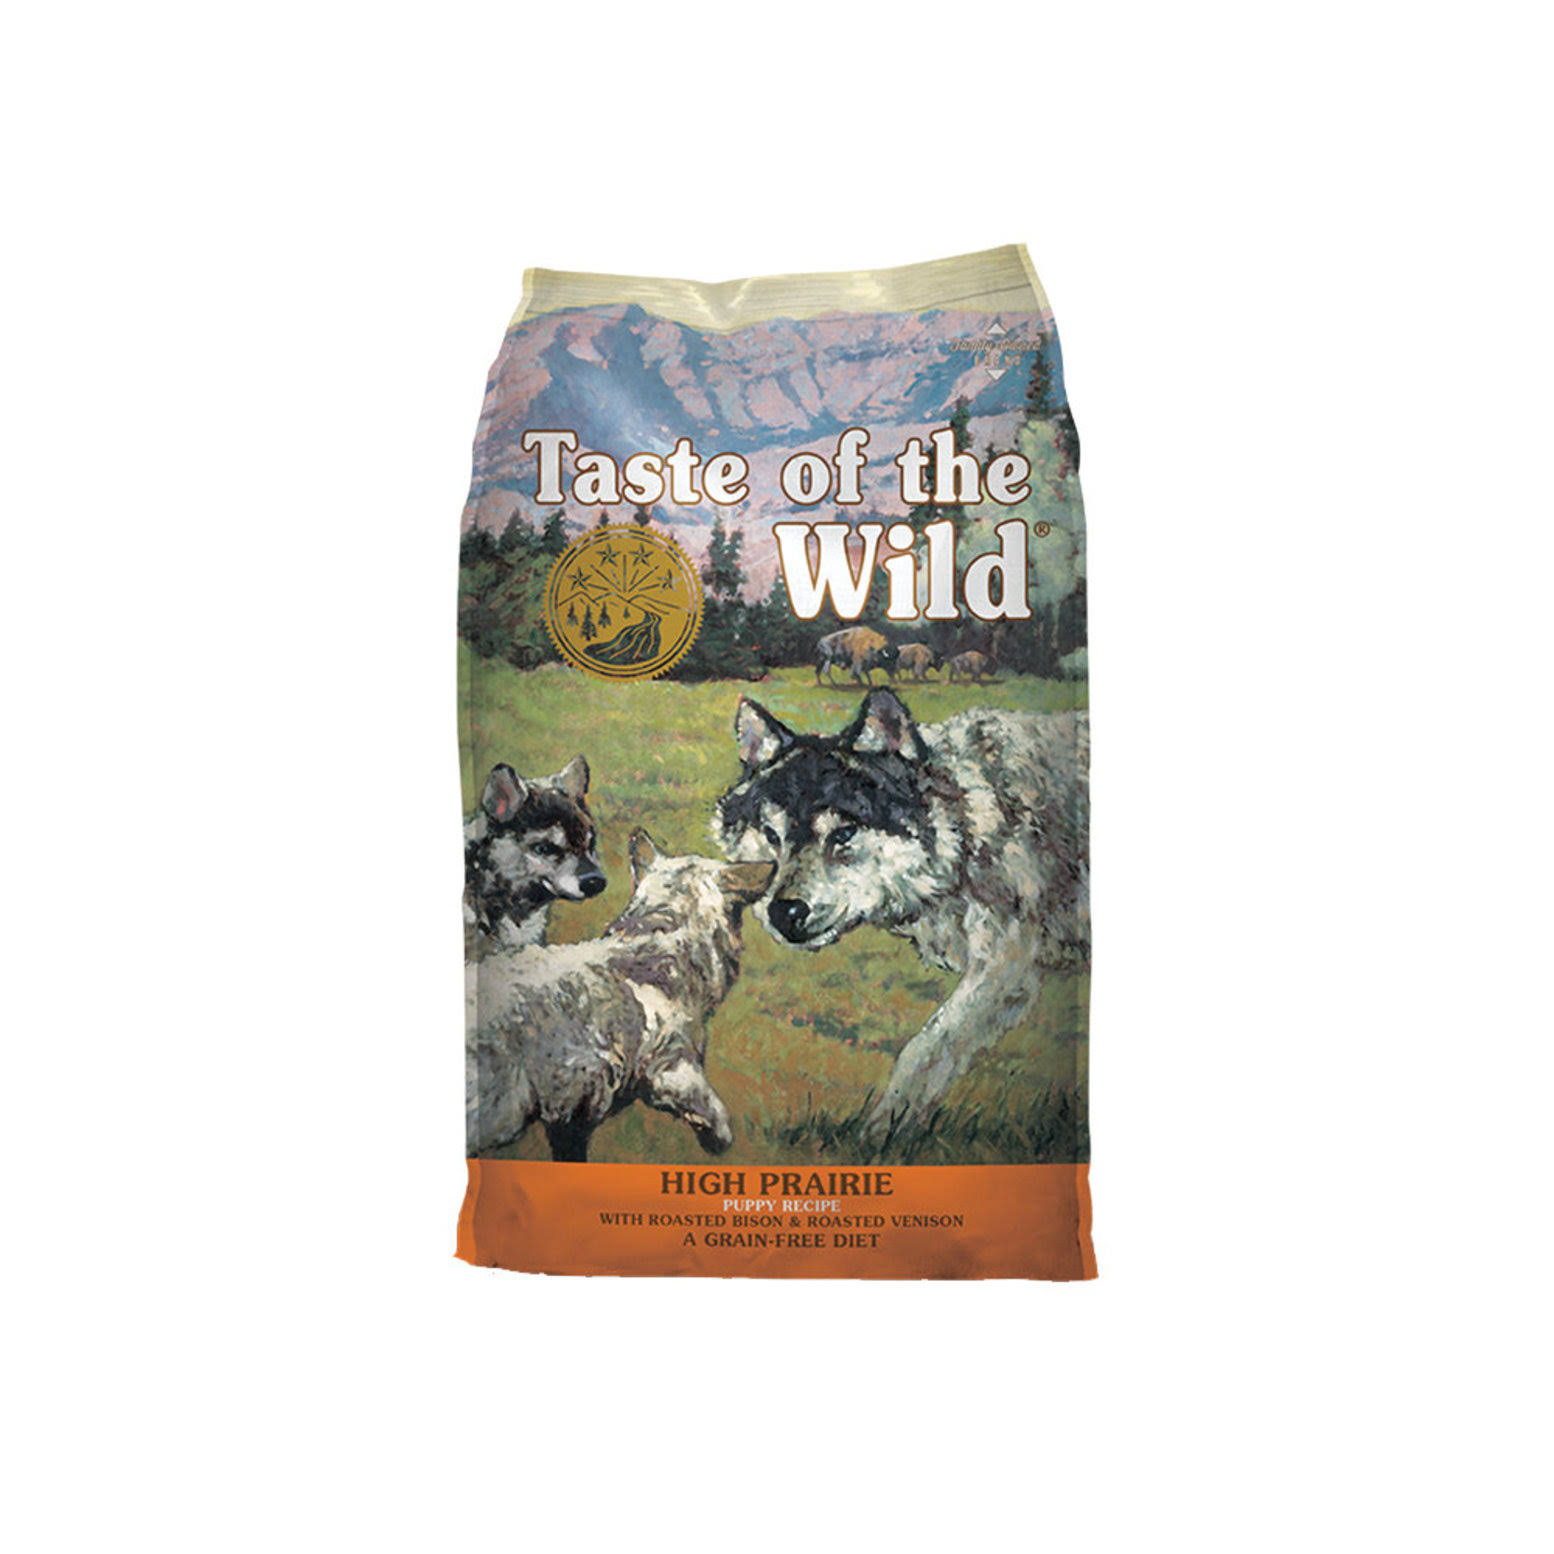 Taste of the Wild High Prairie Puppy Food - 6.35 kg